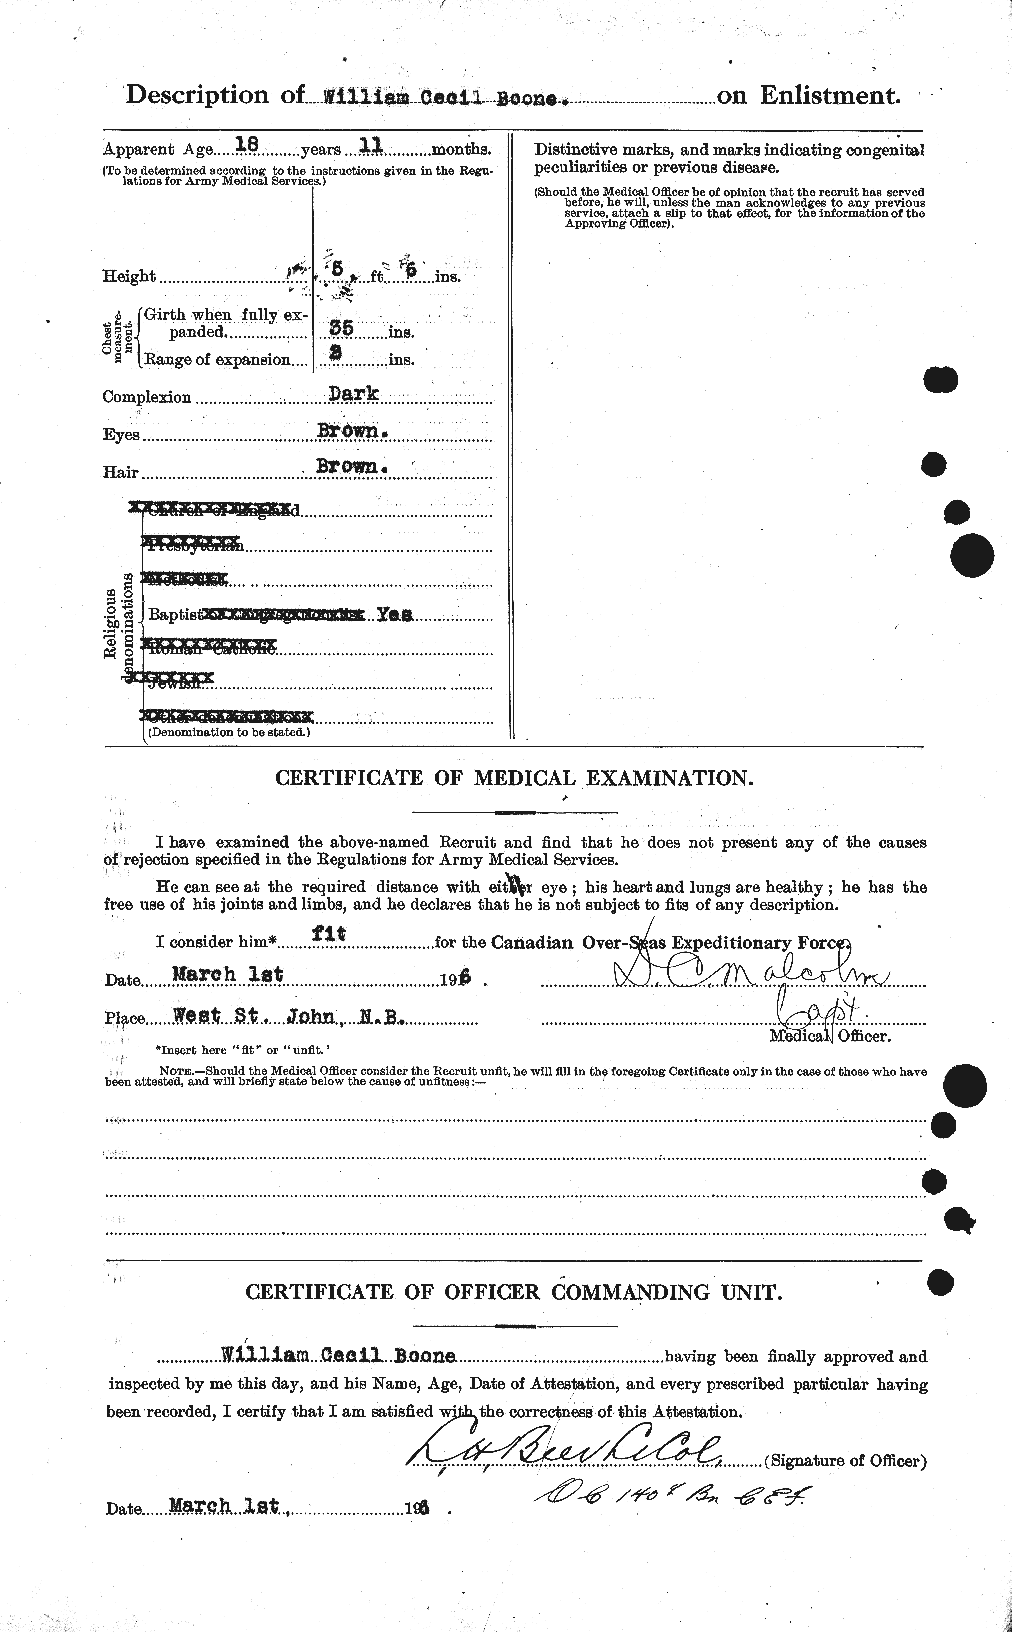 Dossiers du Personnel de la Première Guerre mondiale - CEC 251357b